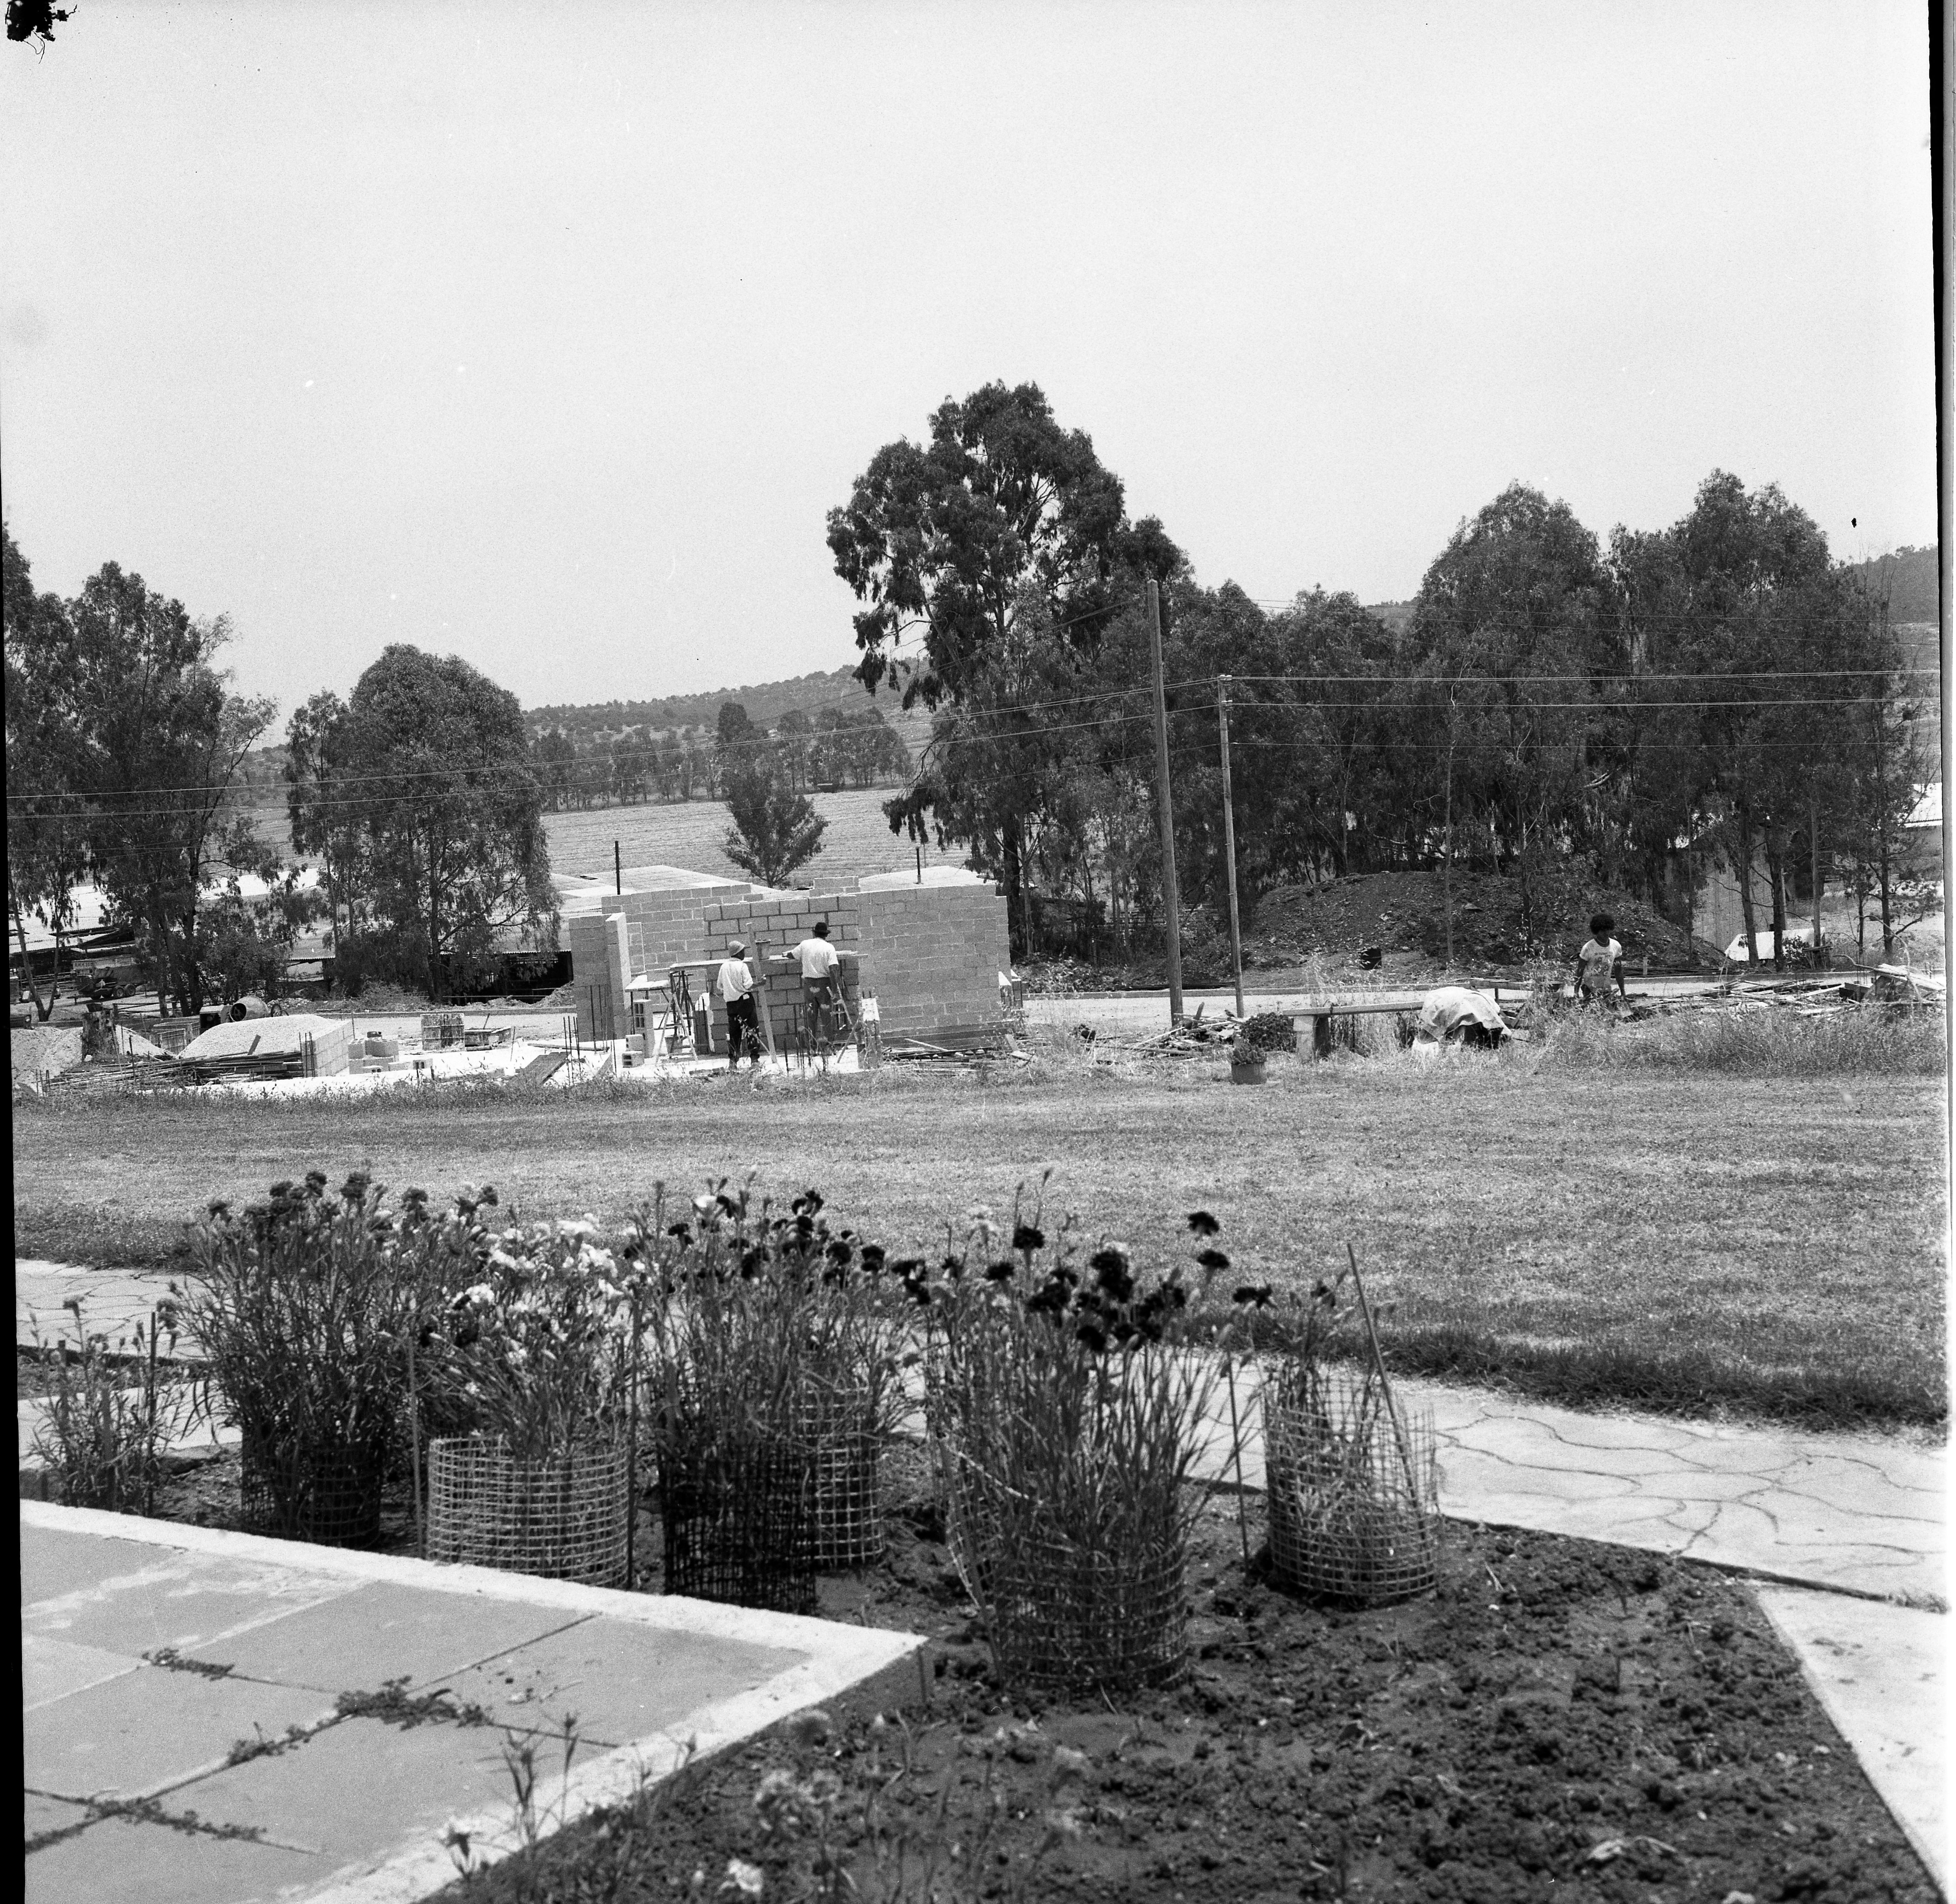  בניית בניית המגבנה ליד הרפת; 1969